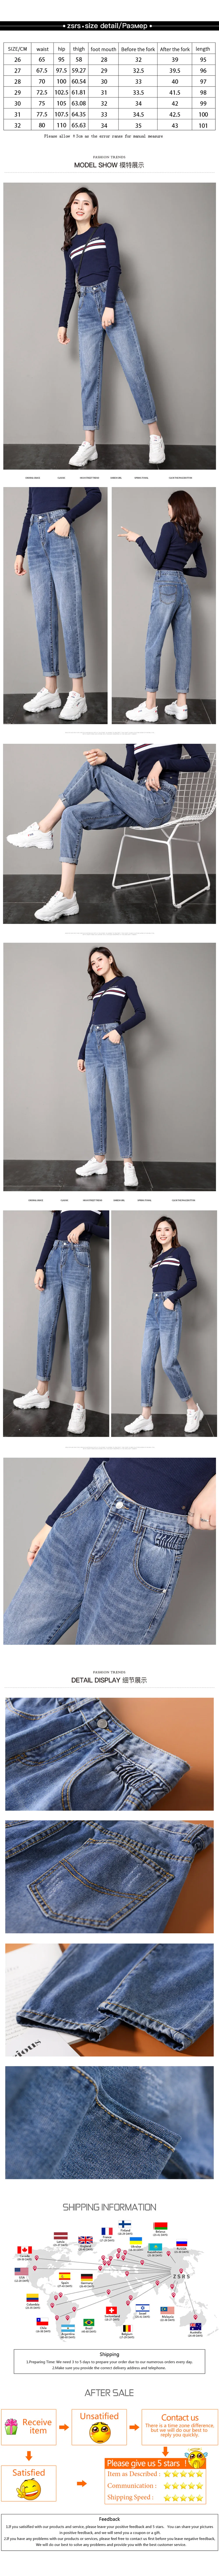 ZSRS узкие джинсы для женщин обтягивающие джинсы с высокой талией женские синие джинсовые приталенные Стрейчевые штаны талия женские джинсы брюки плюс размер